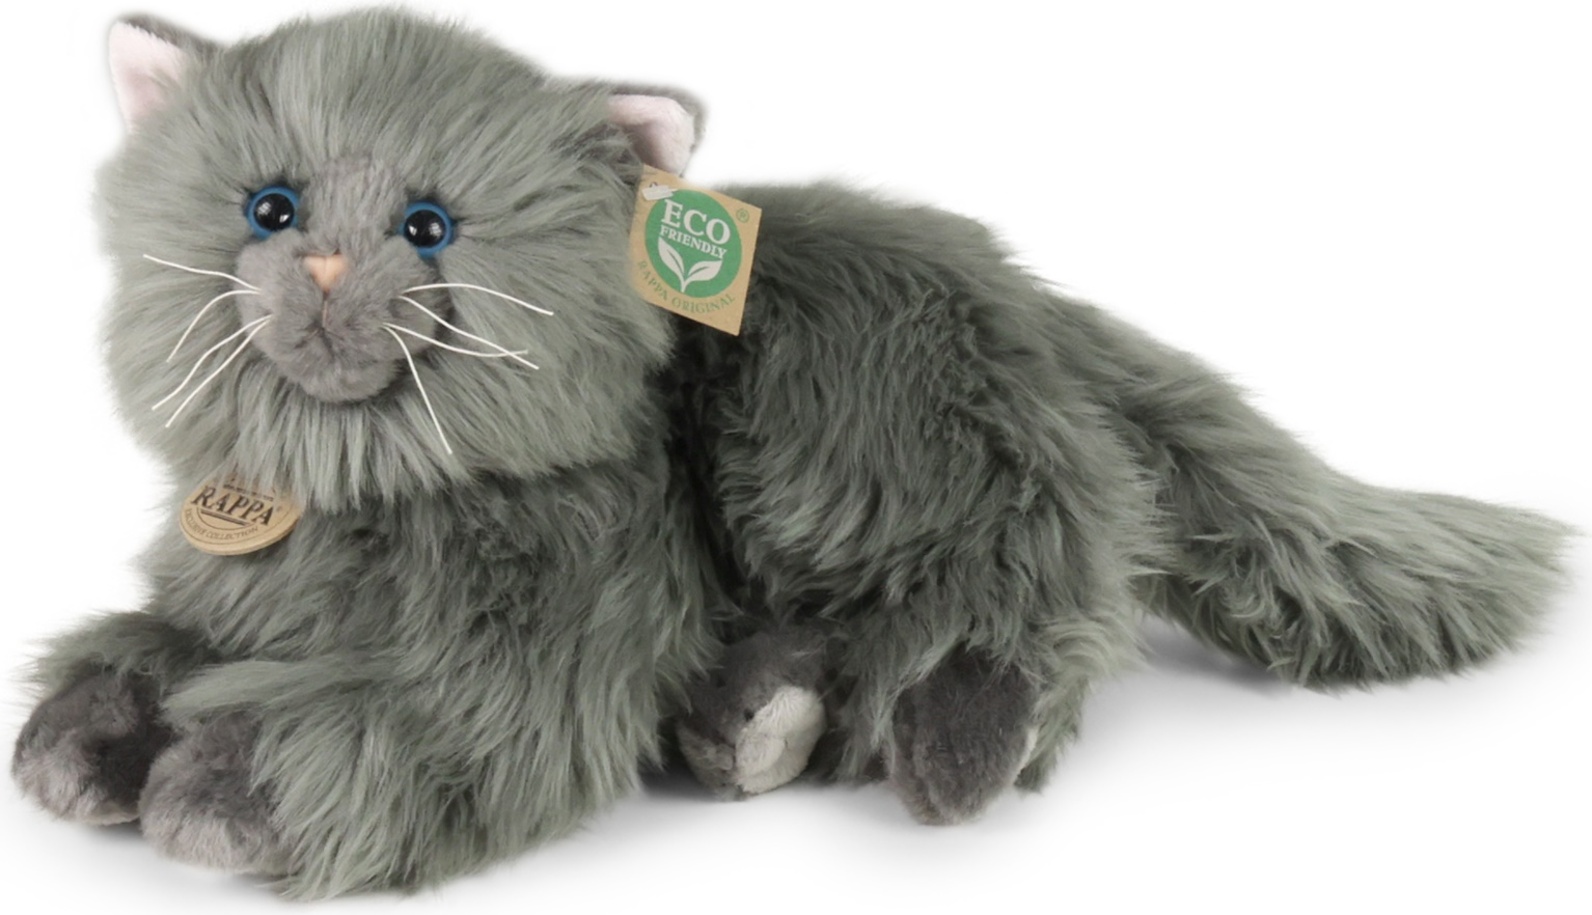 Plyšová kočka perská šedá ležící 30 cm ECO-FRIENDLY